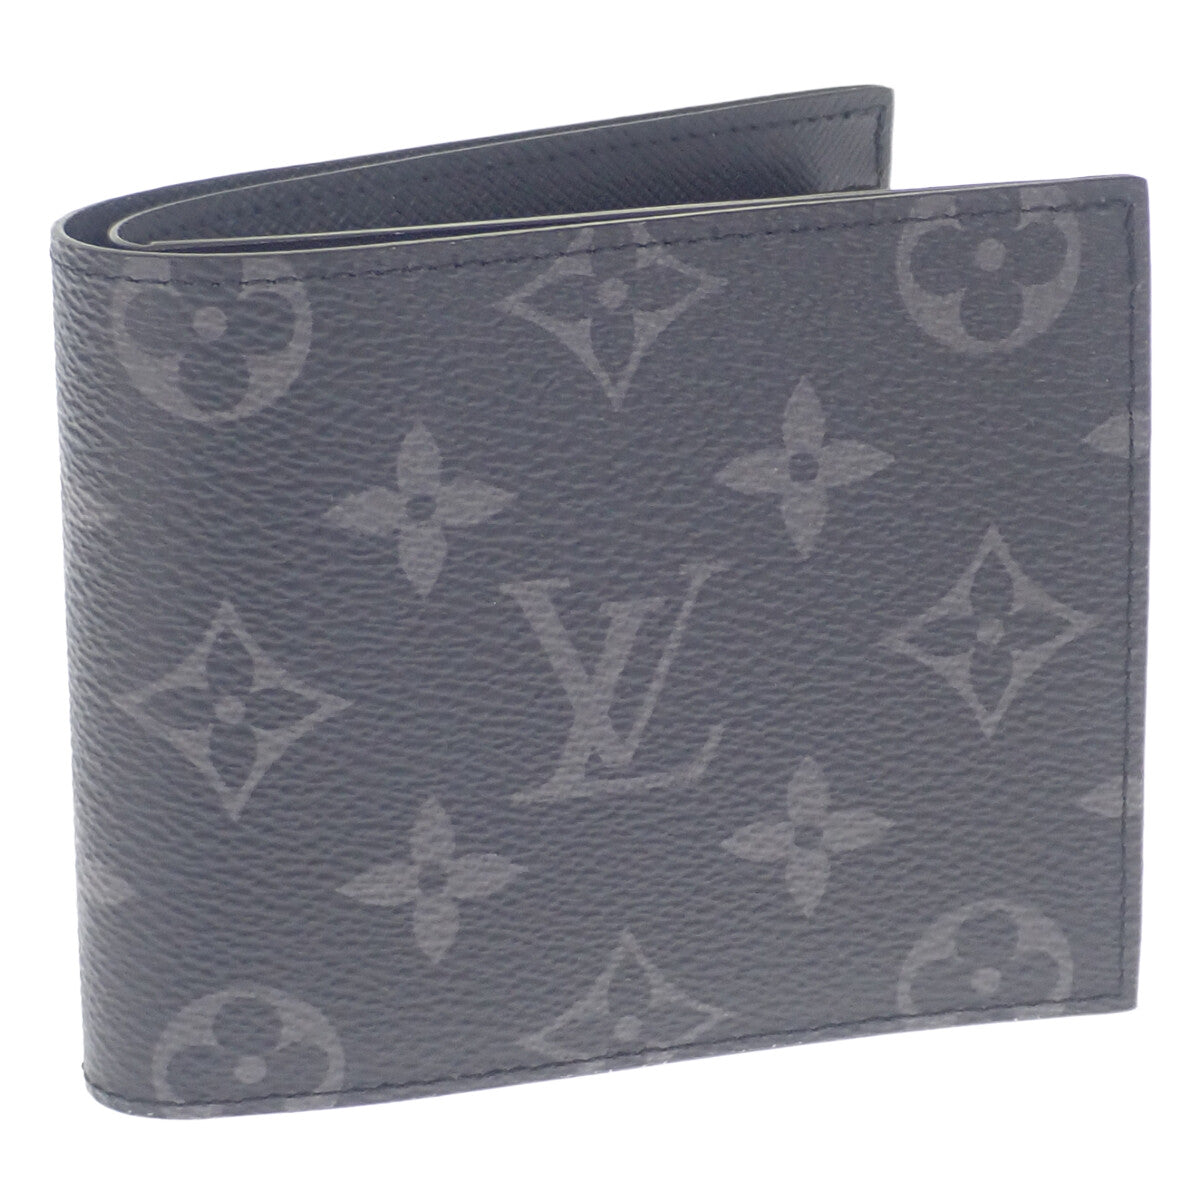 Louis Vuitton Portefeuille Marco Canvas Short Wallet M62545 in Excellent condition